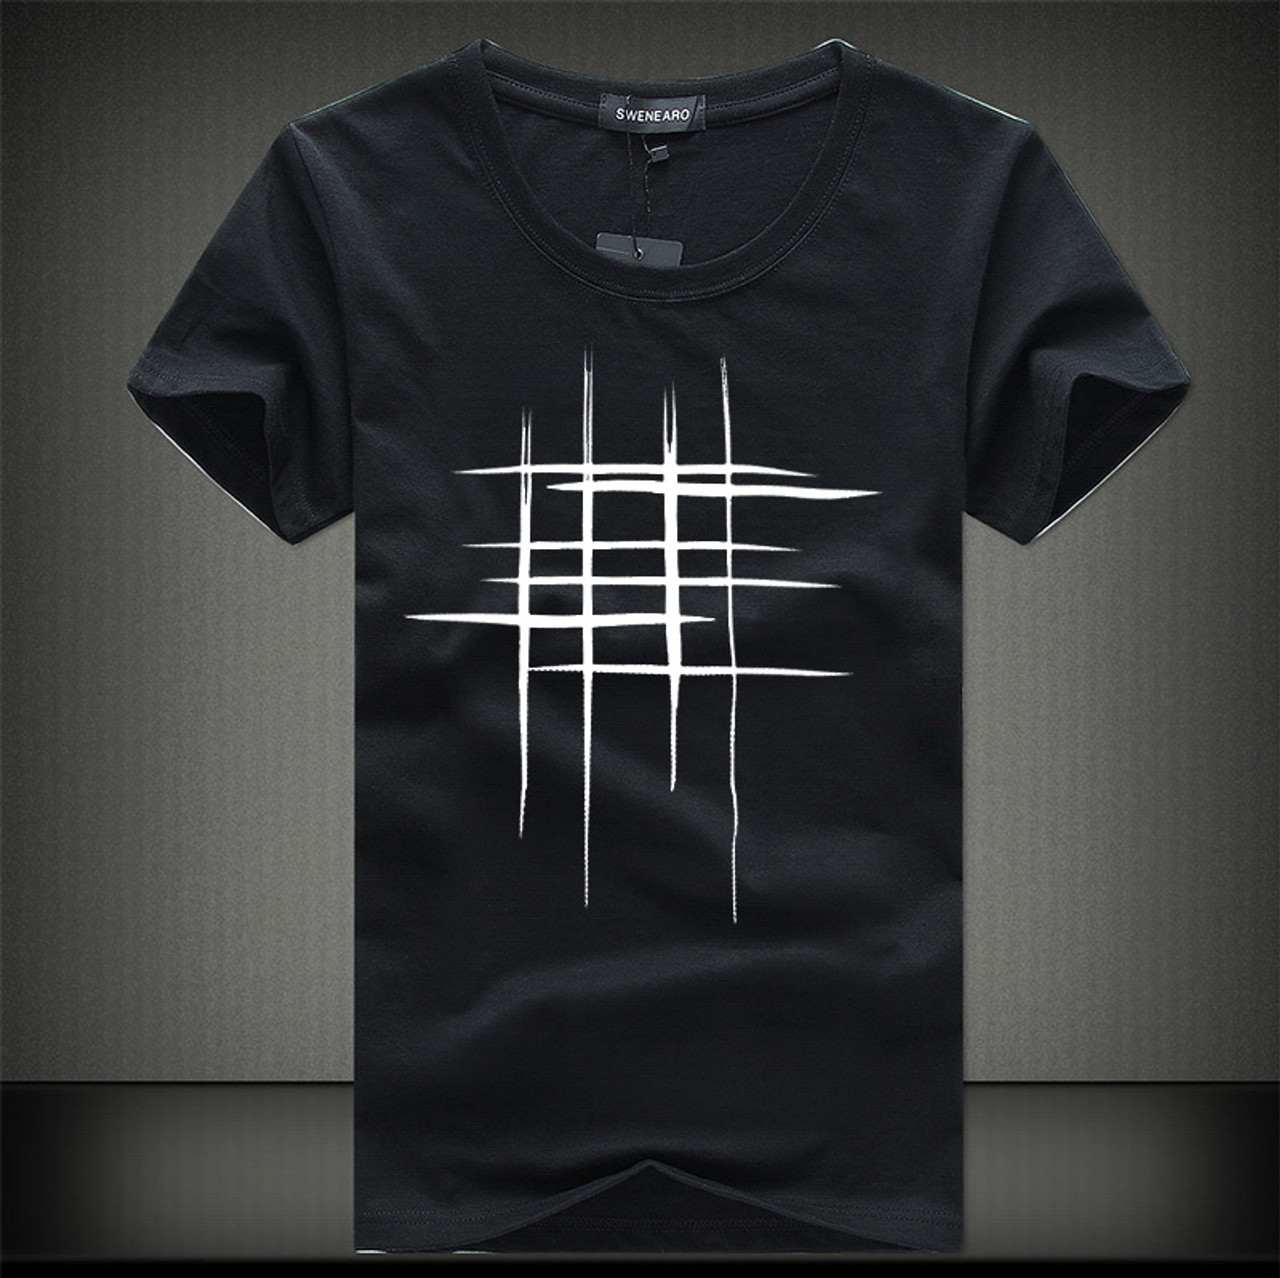 new t shirt design 2018